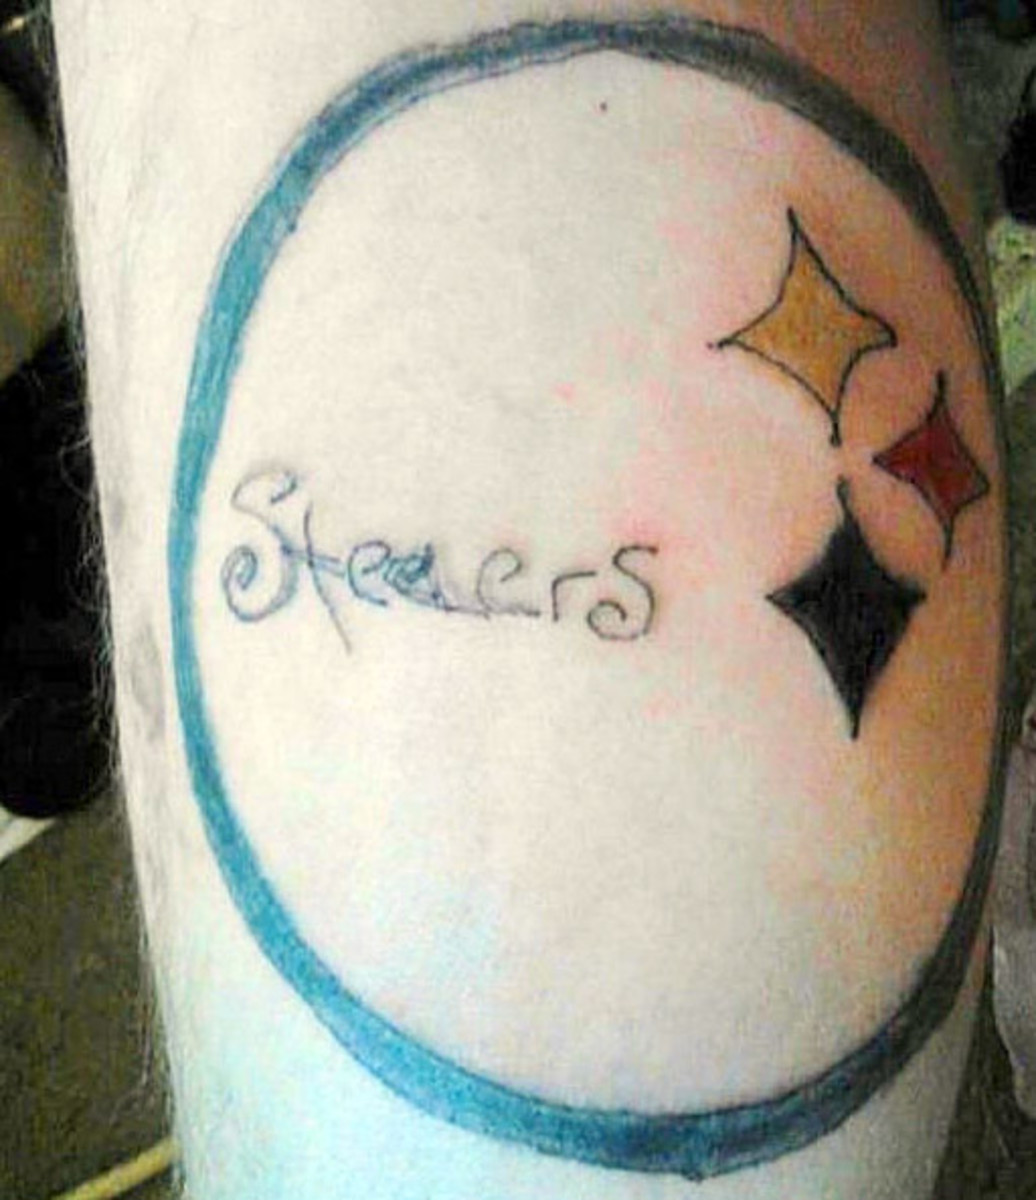 Pittsburgh [Stelers] Steelers